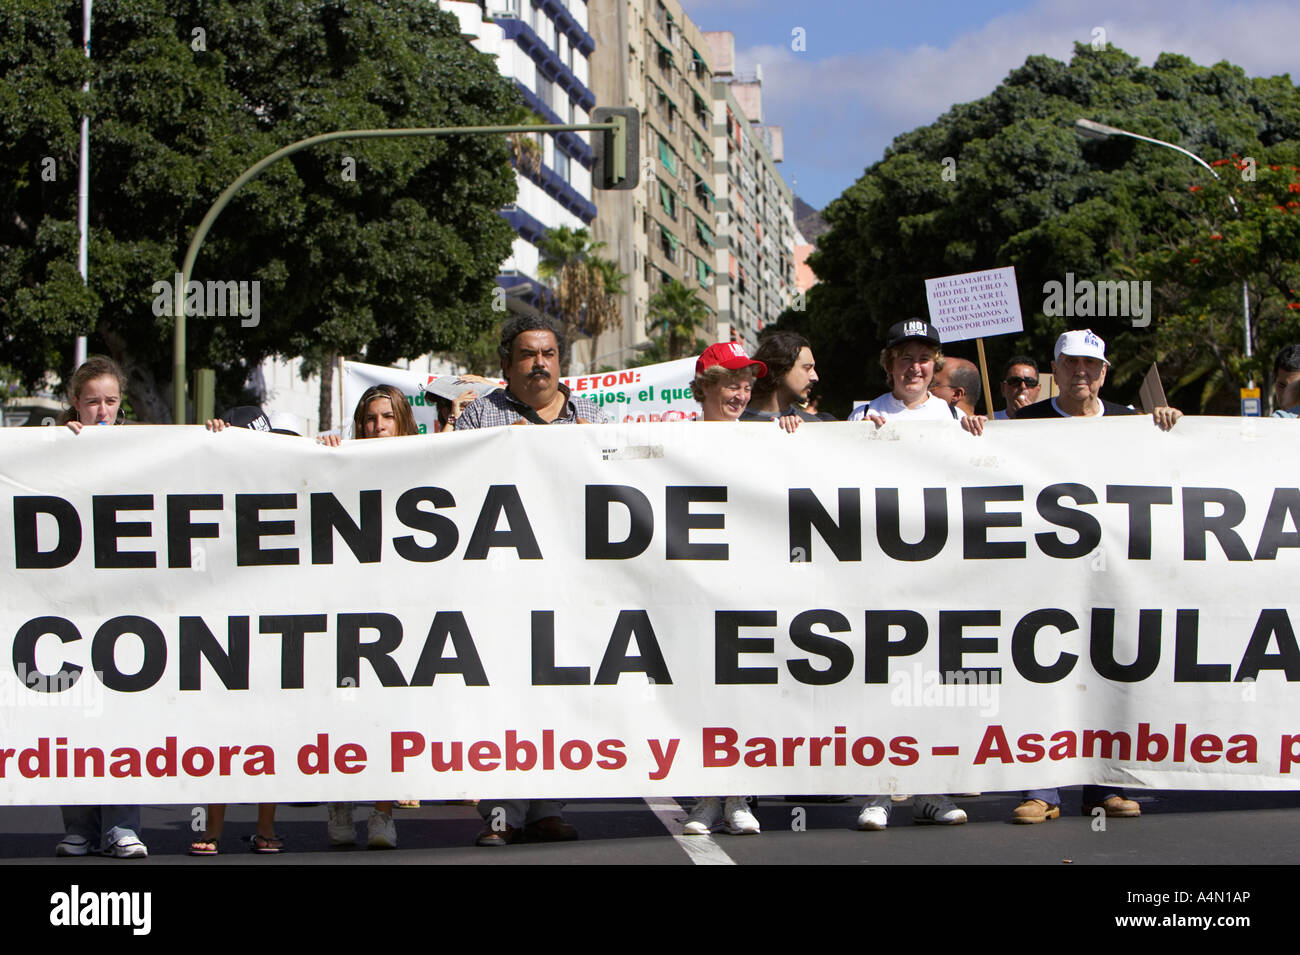 Spanische Demonstranten zu demonstrieren, zu Fuß mit breiten spanische Sprache Banner in Santa Cruz-Teneriffa-Kanarische Inseln-Spanien Stockfoto